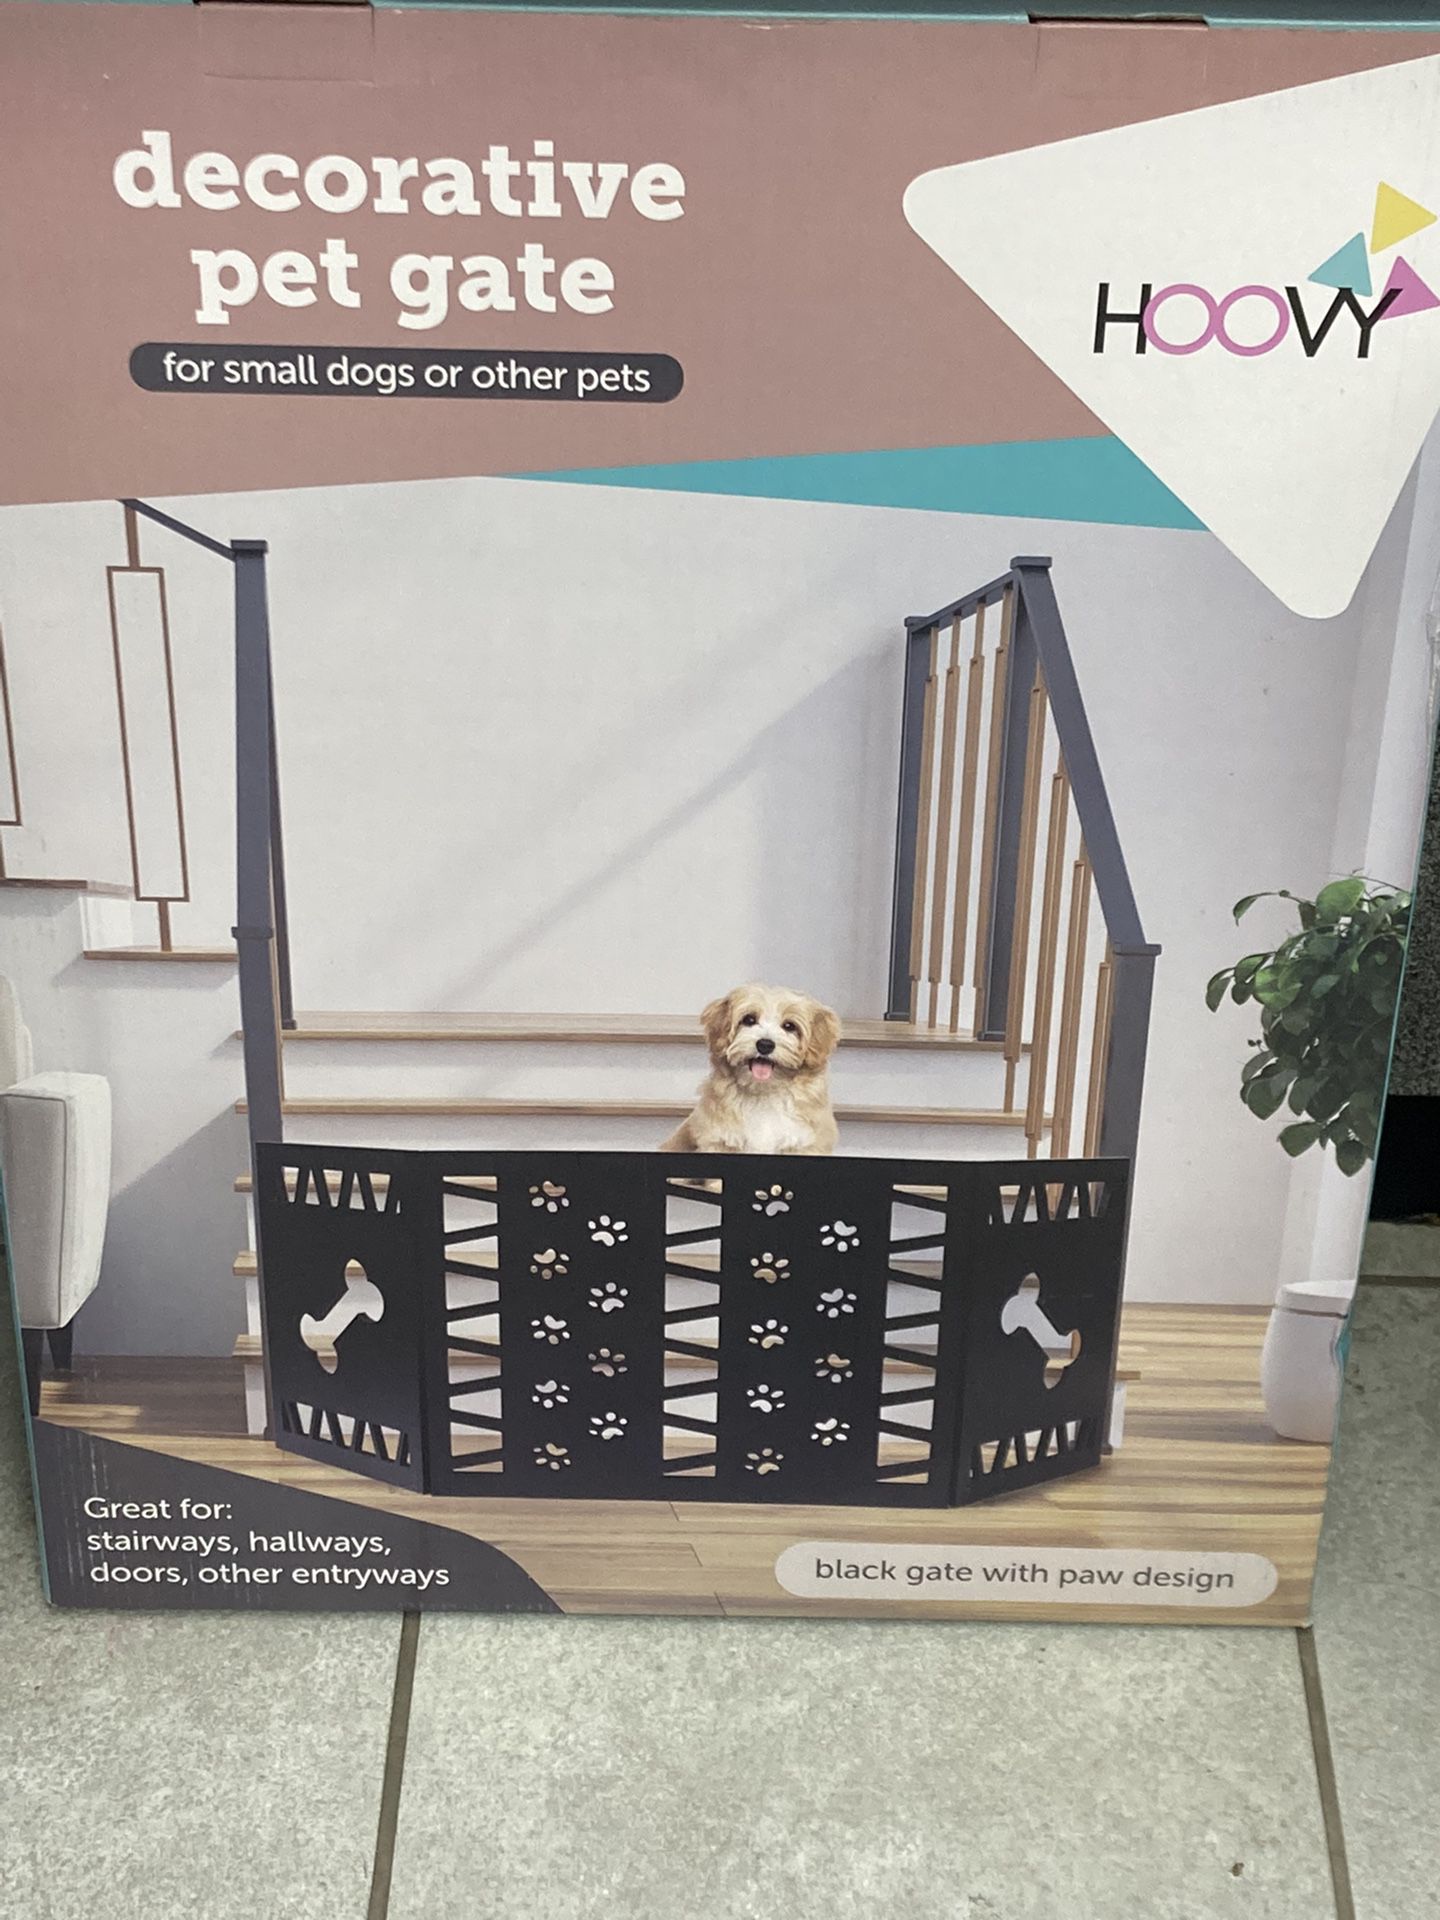 Decorative Pet Gate - 47” Wide Read Description For Details 